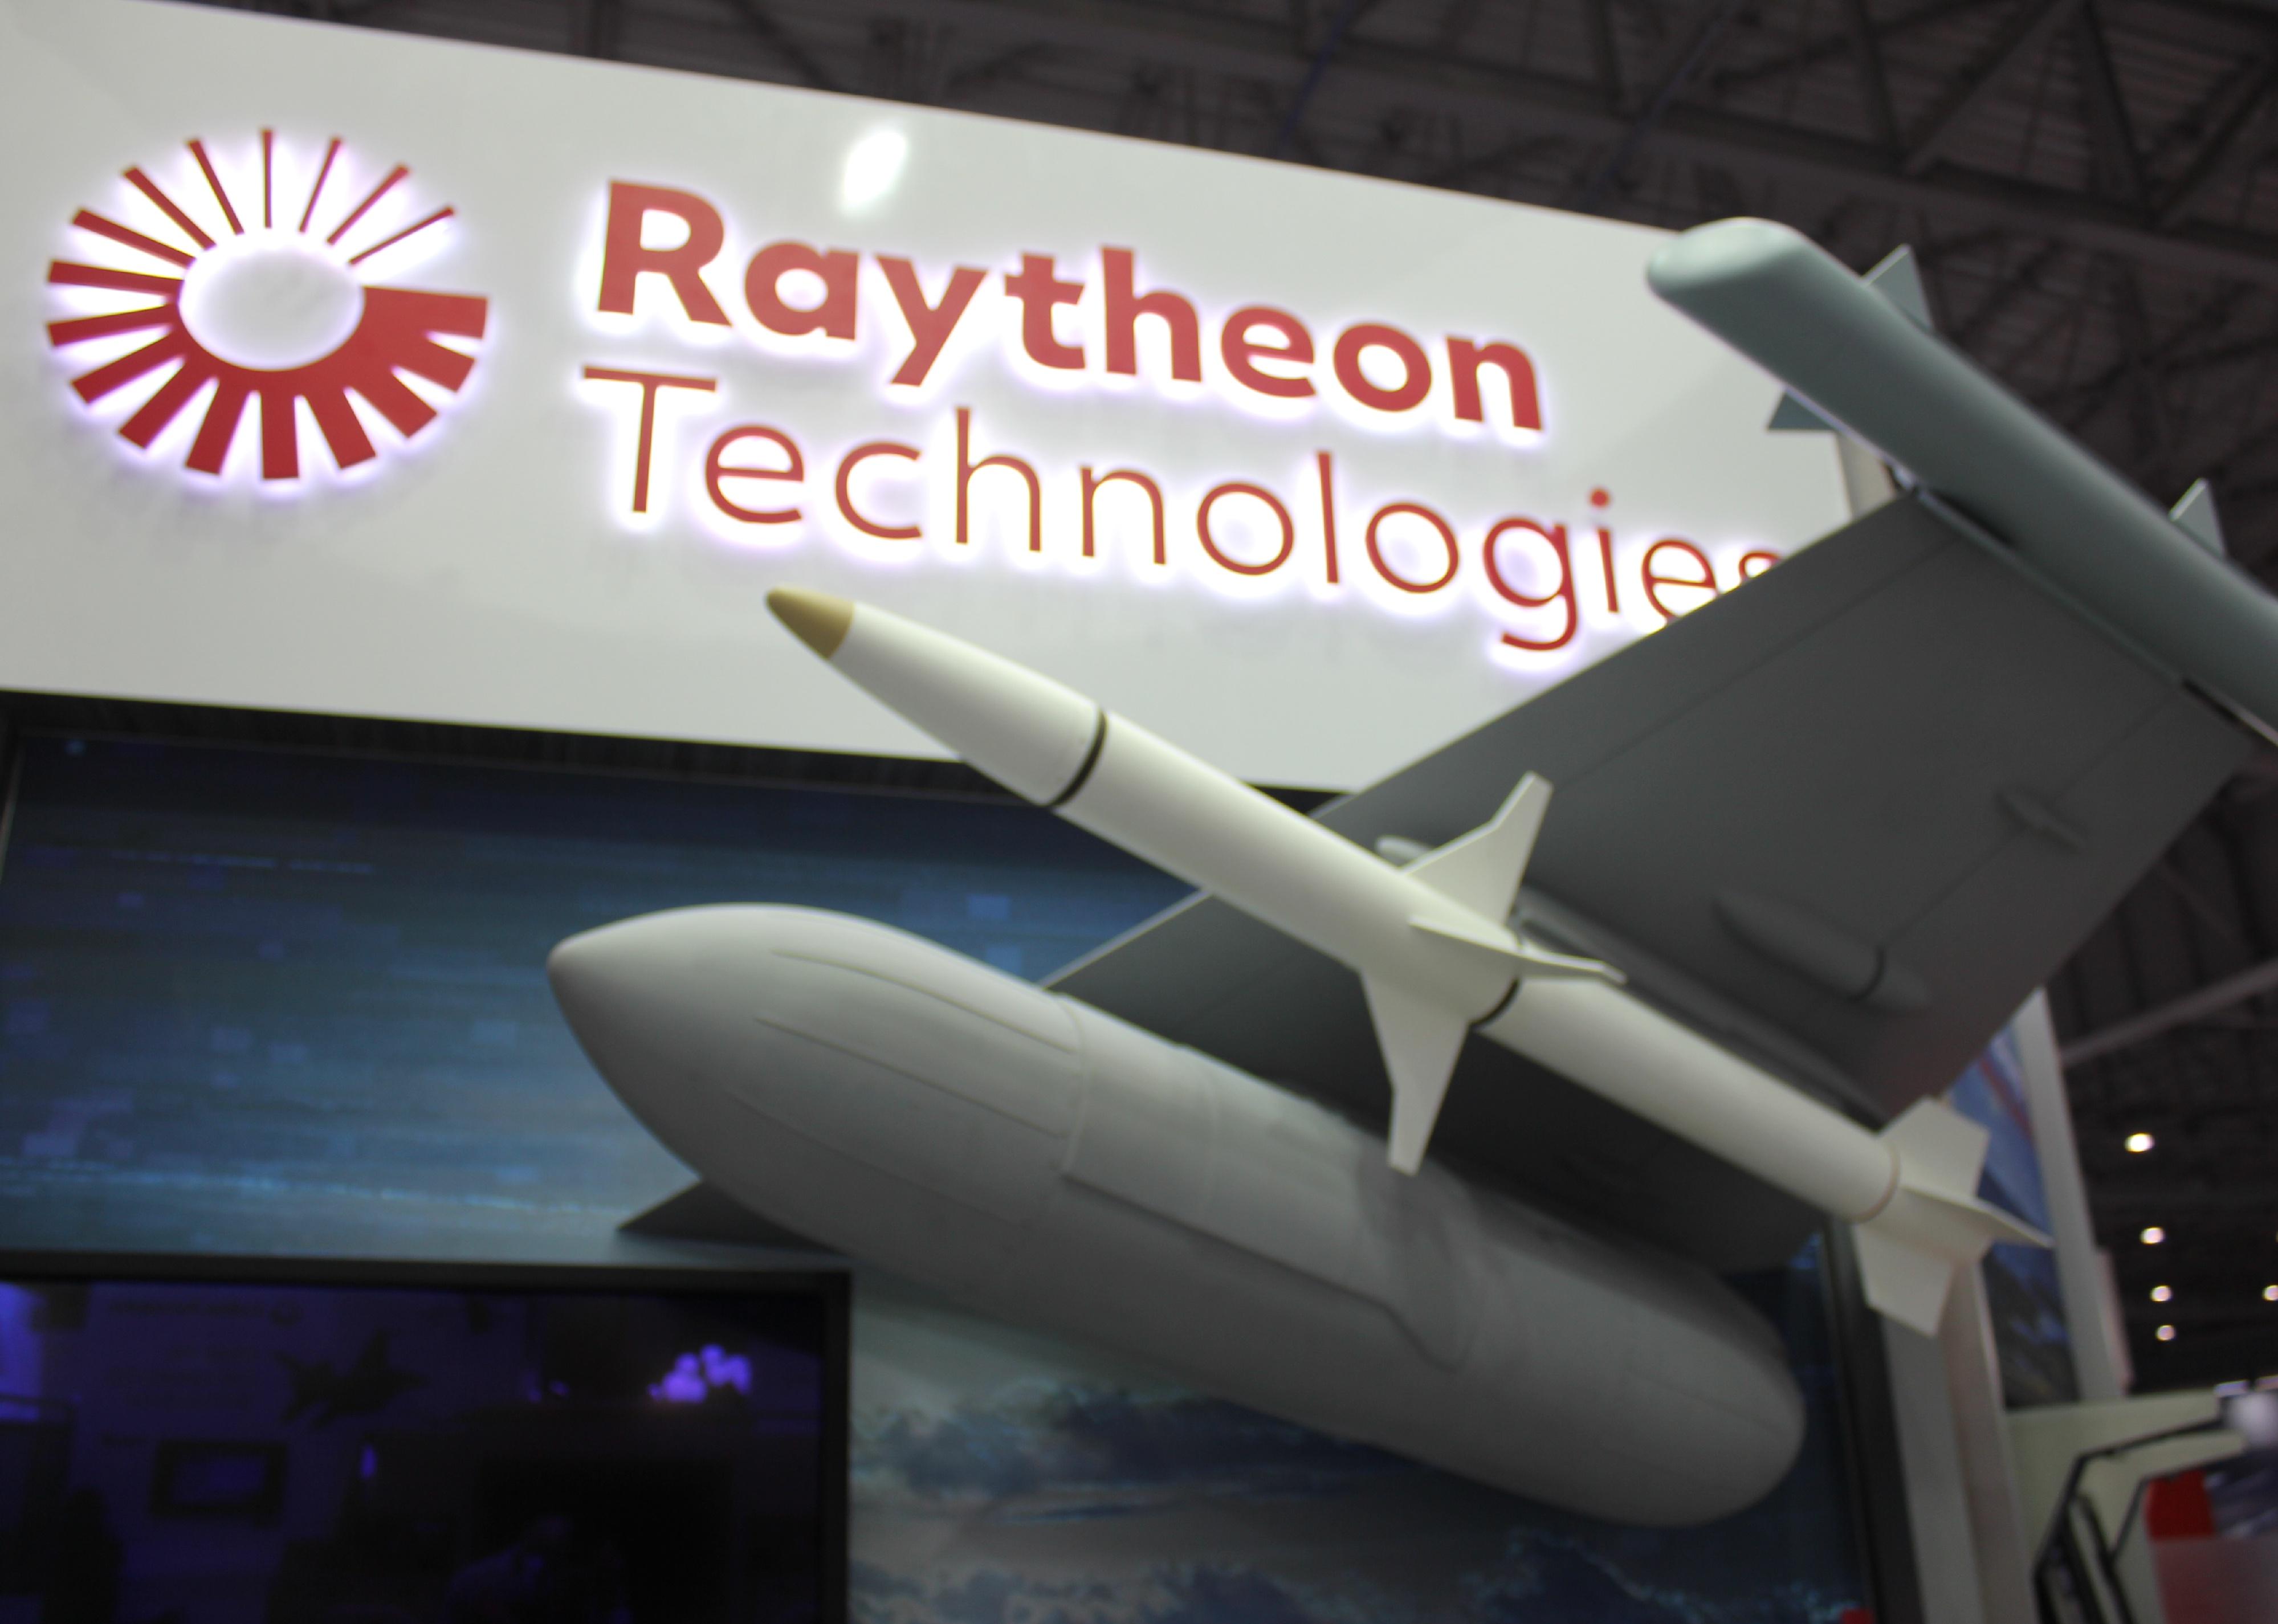 Raytheon Technologies exhibitor pavilion.